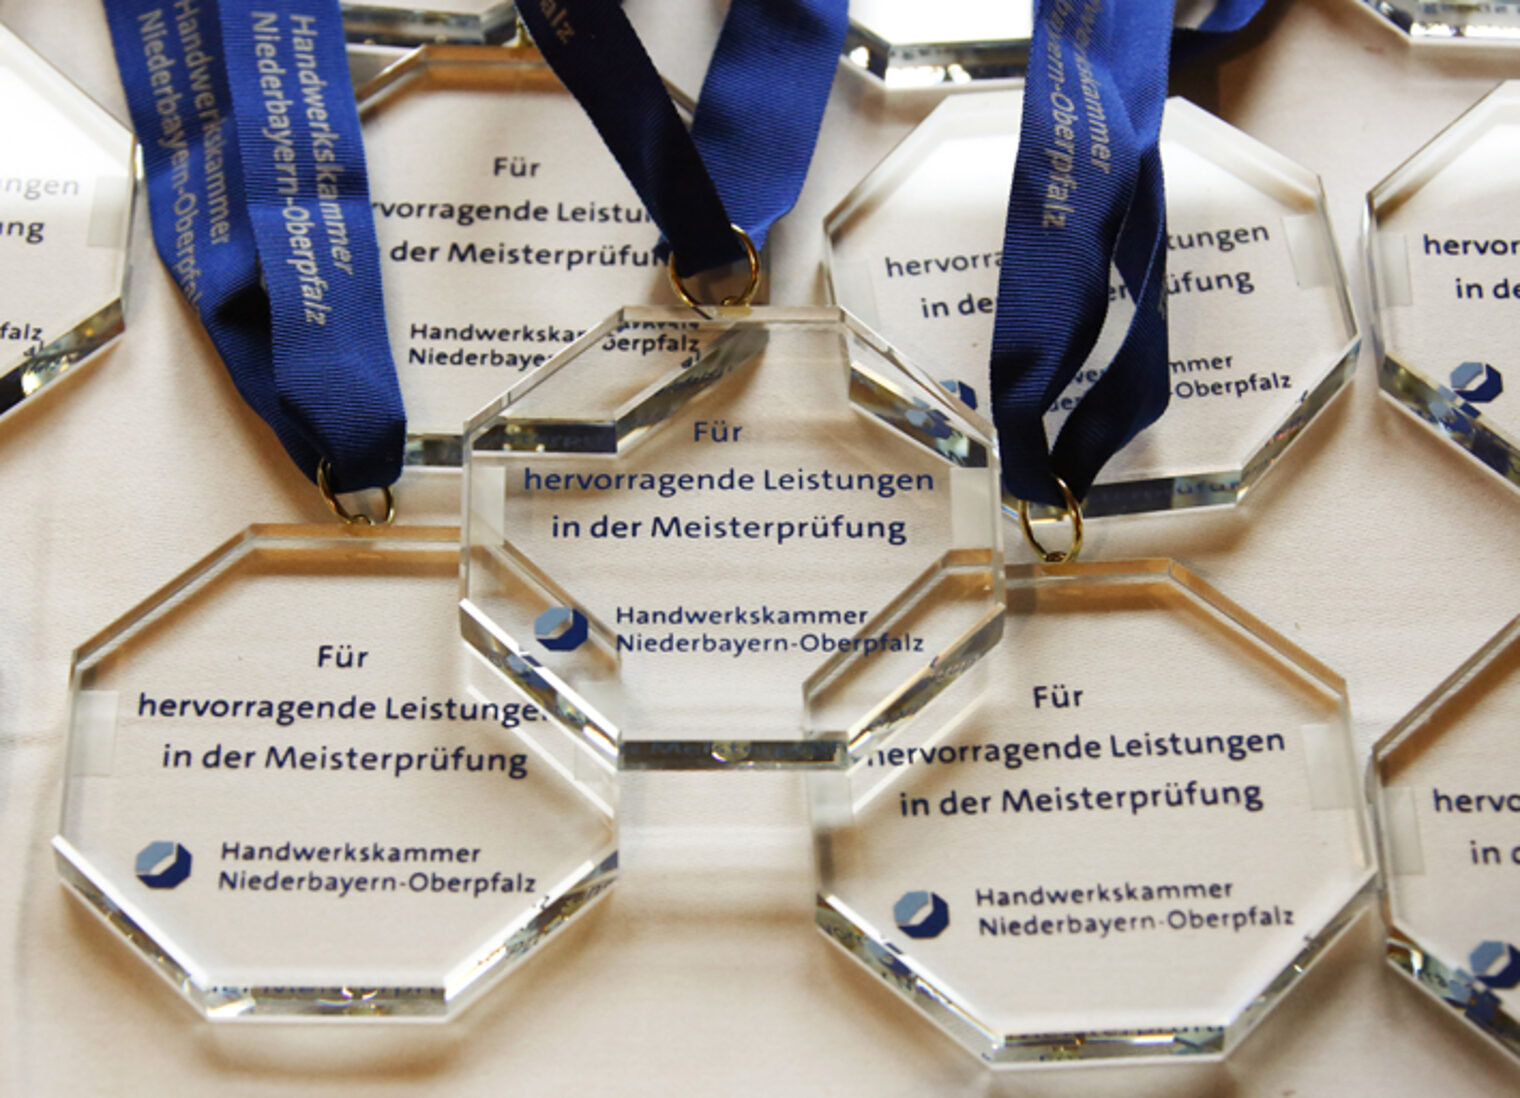 Im Sparkassensaal in Straubing wurden die ¿Meisterbesten¿ für ihre herausragenden Leistungen geehrt. 